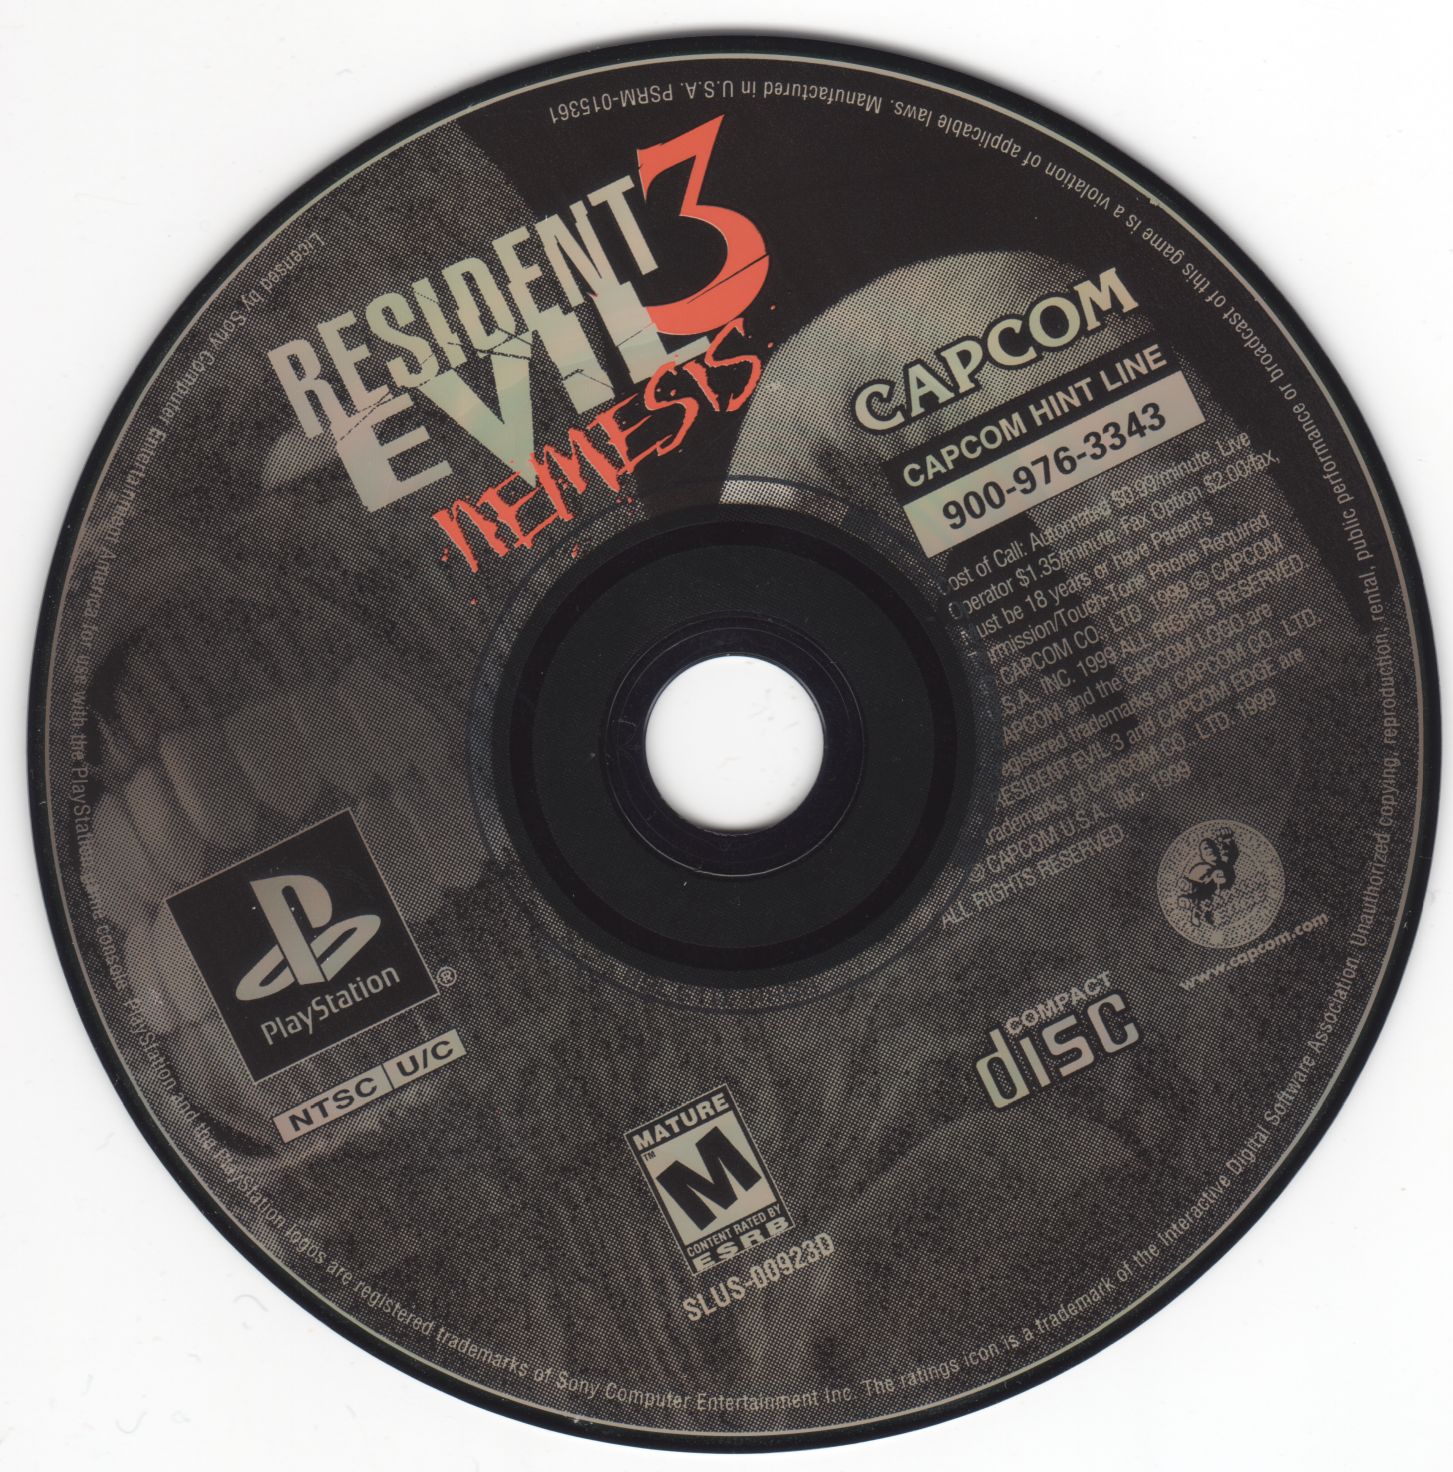 Resident Evil 3 PSX cover